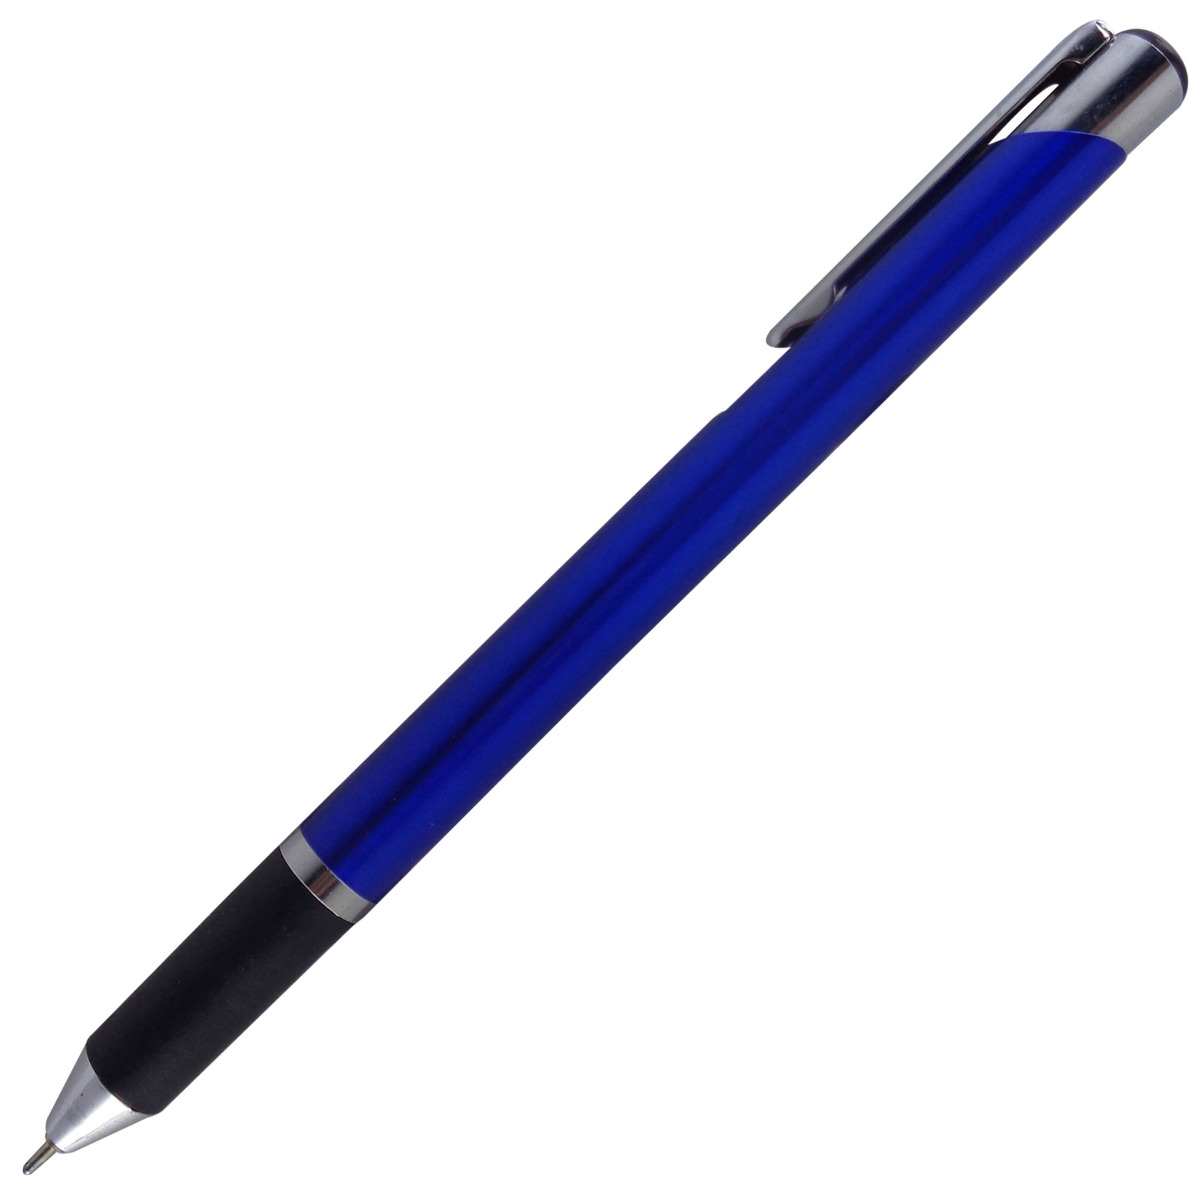 Cello Model: 13653 Benz Aqua- Dark blue color body with silver clip Fine Tip Rectractable ball pen